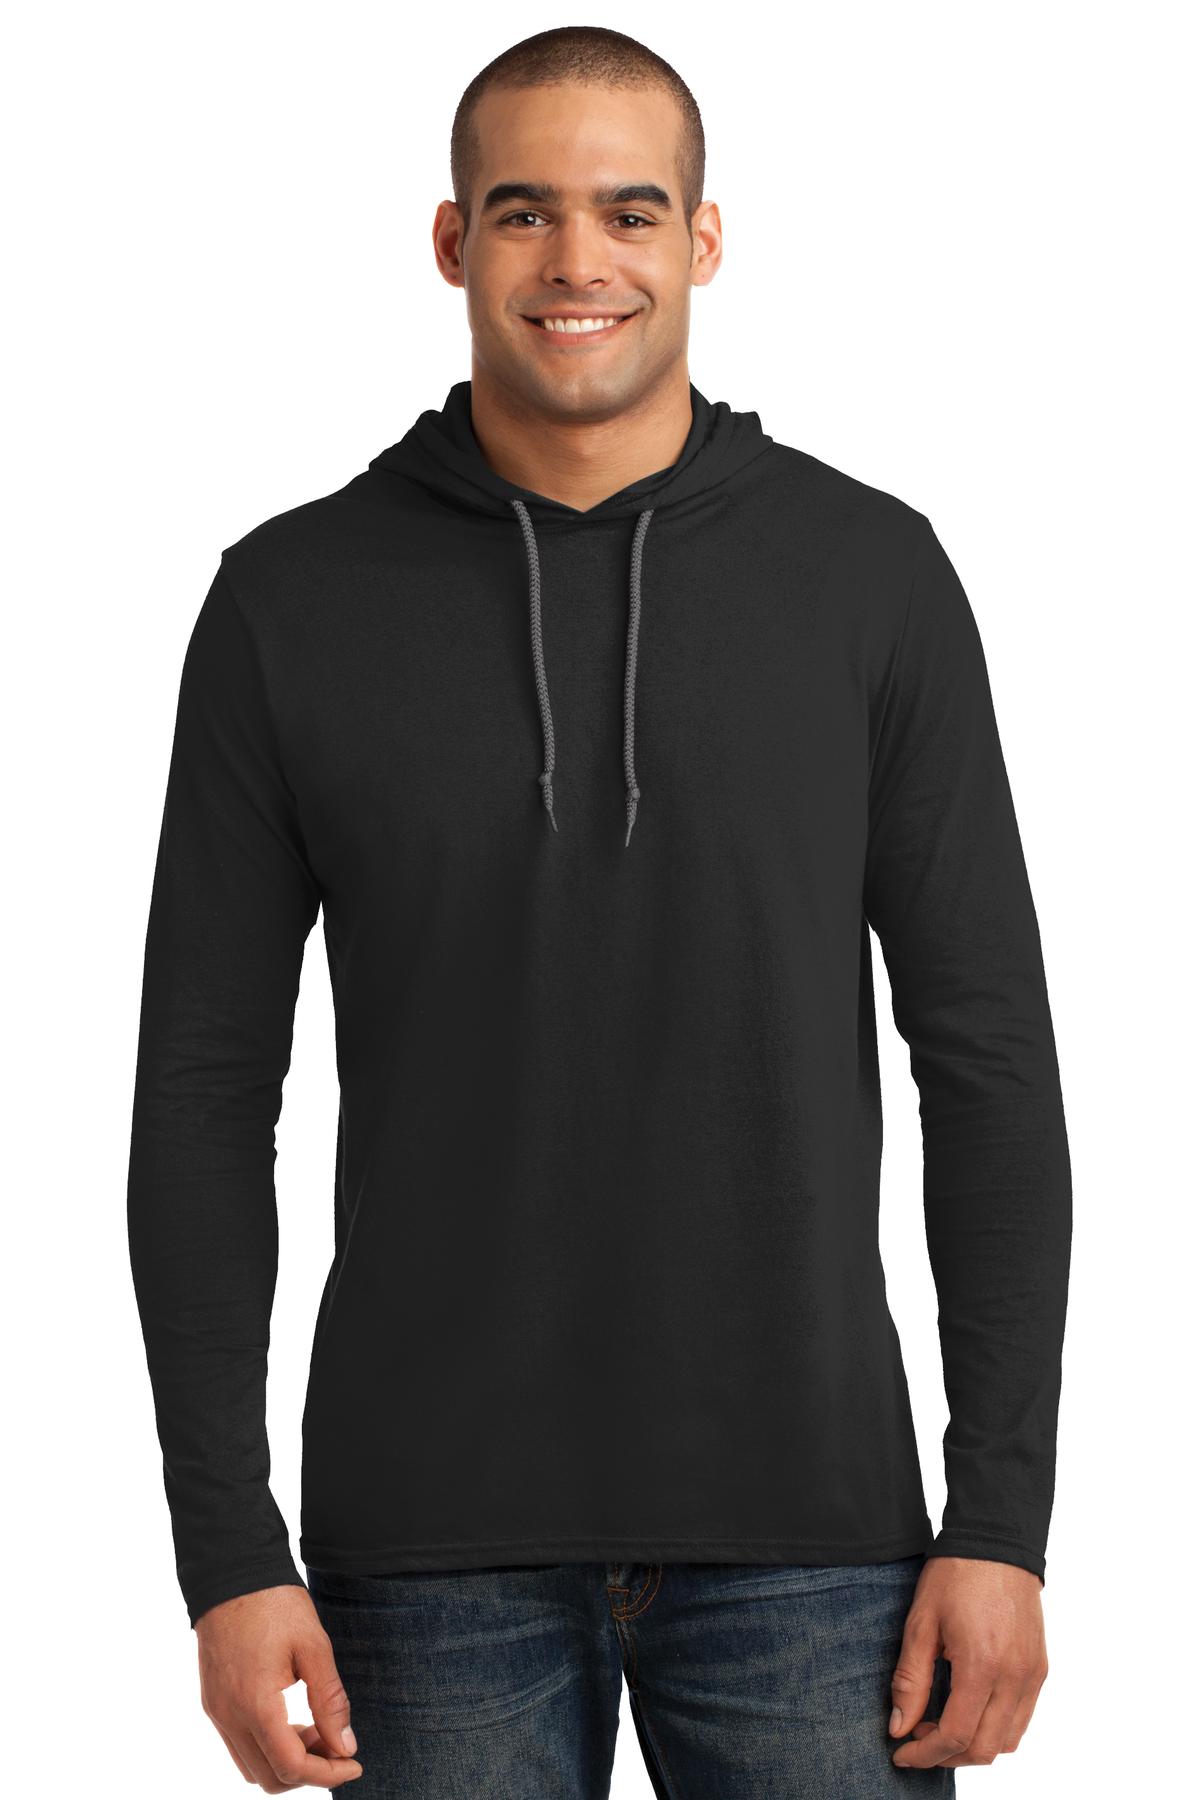 Nicetage Men’s Tops Casual Pullover Hoodie Pleated Raglan Long Sleeve Hooded T-Shirt Slim Fit Sweatshirt